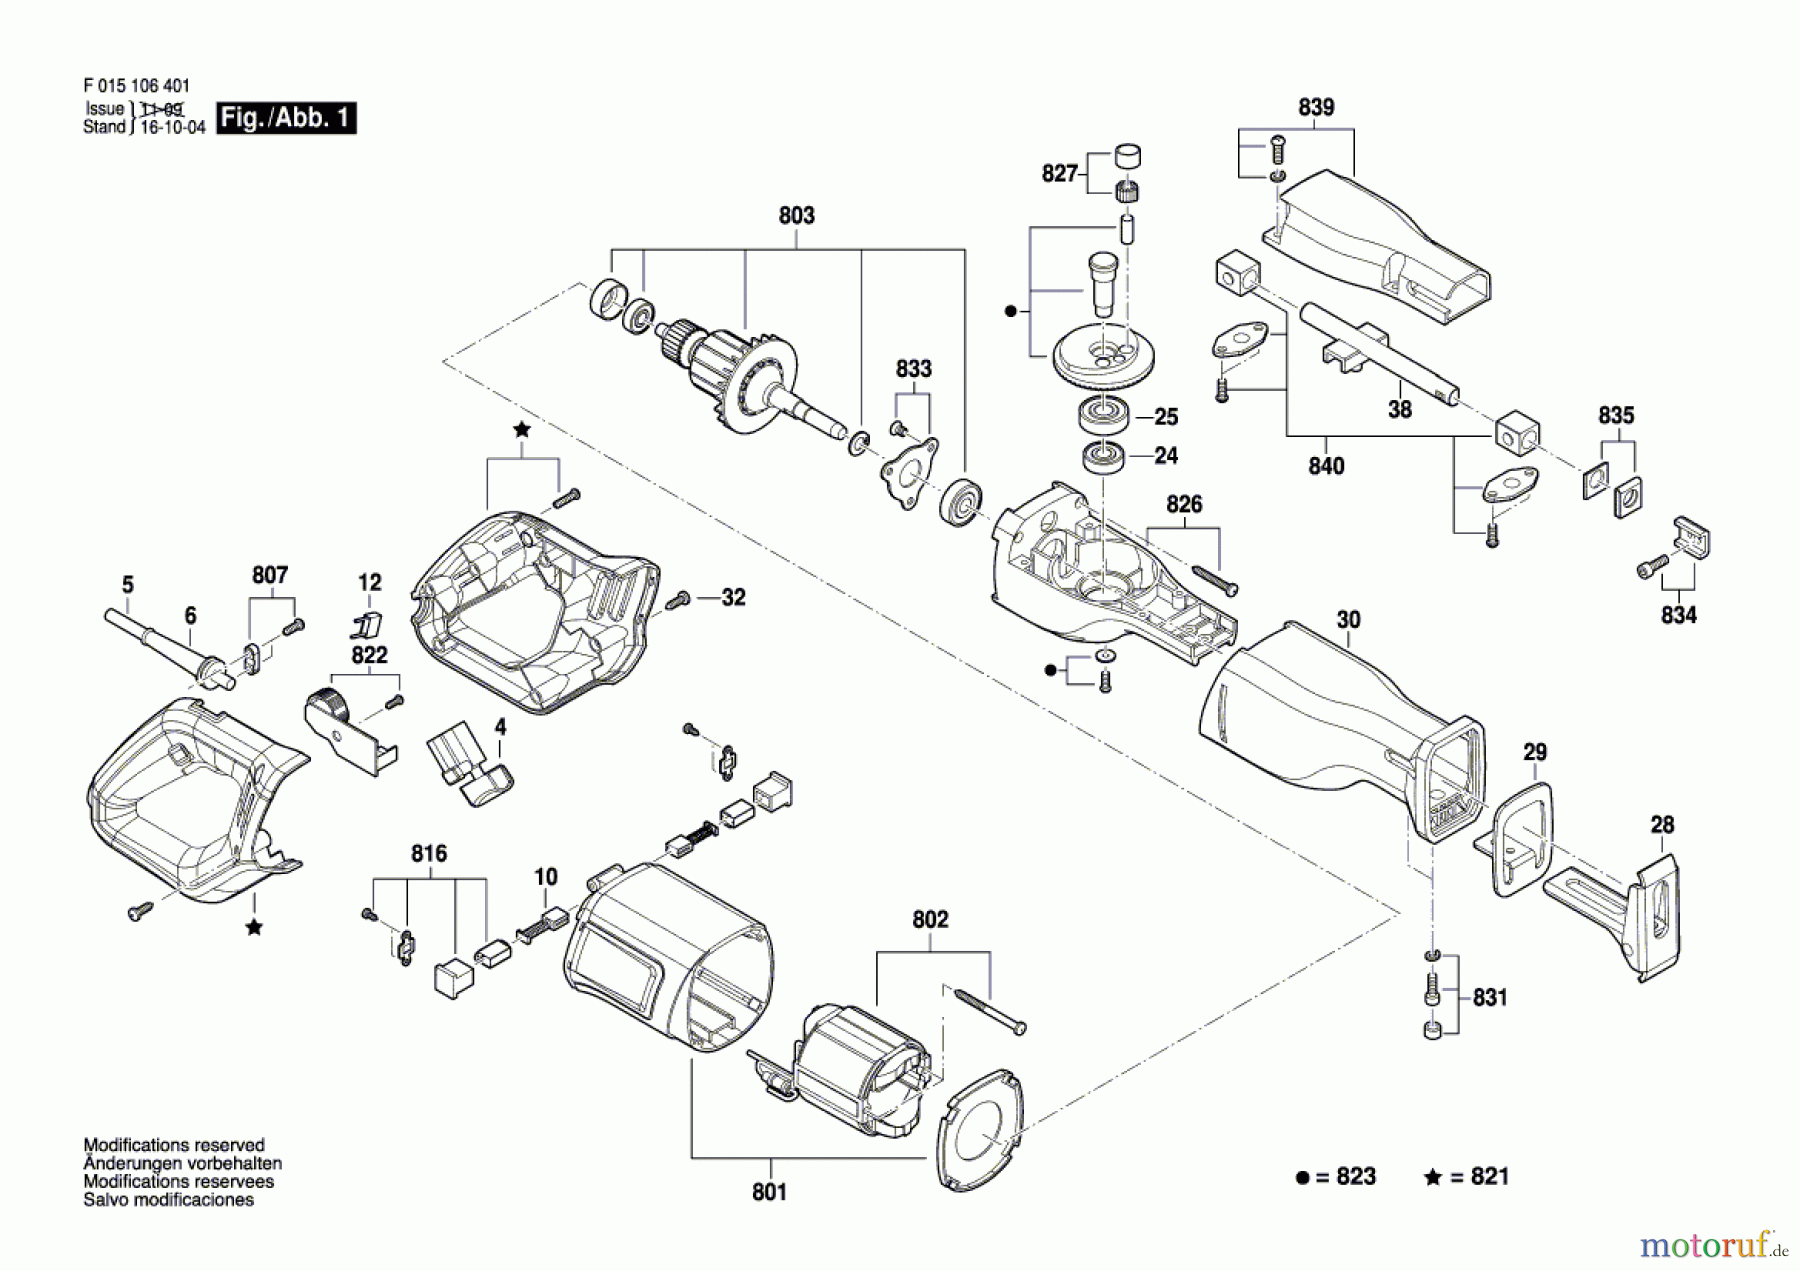  Bosch Werkzeug Gw-Säbelsäge 1064 Seite 1